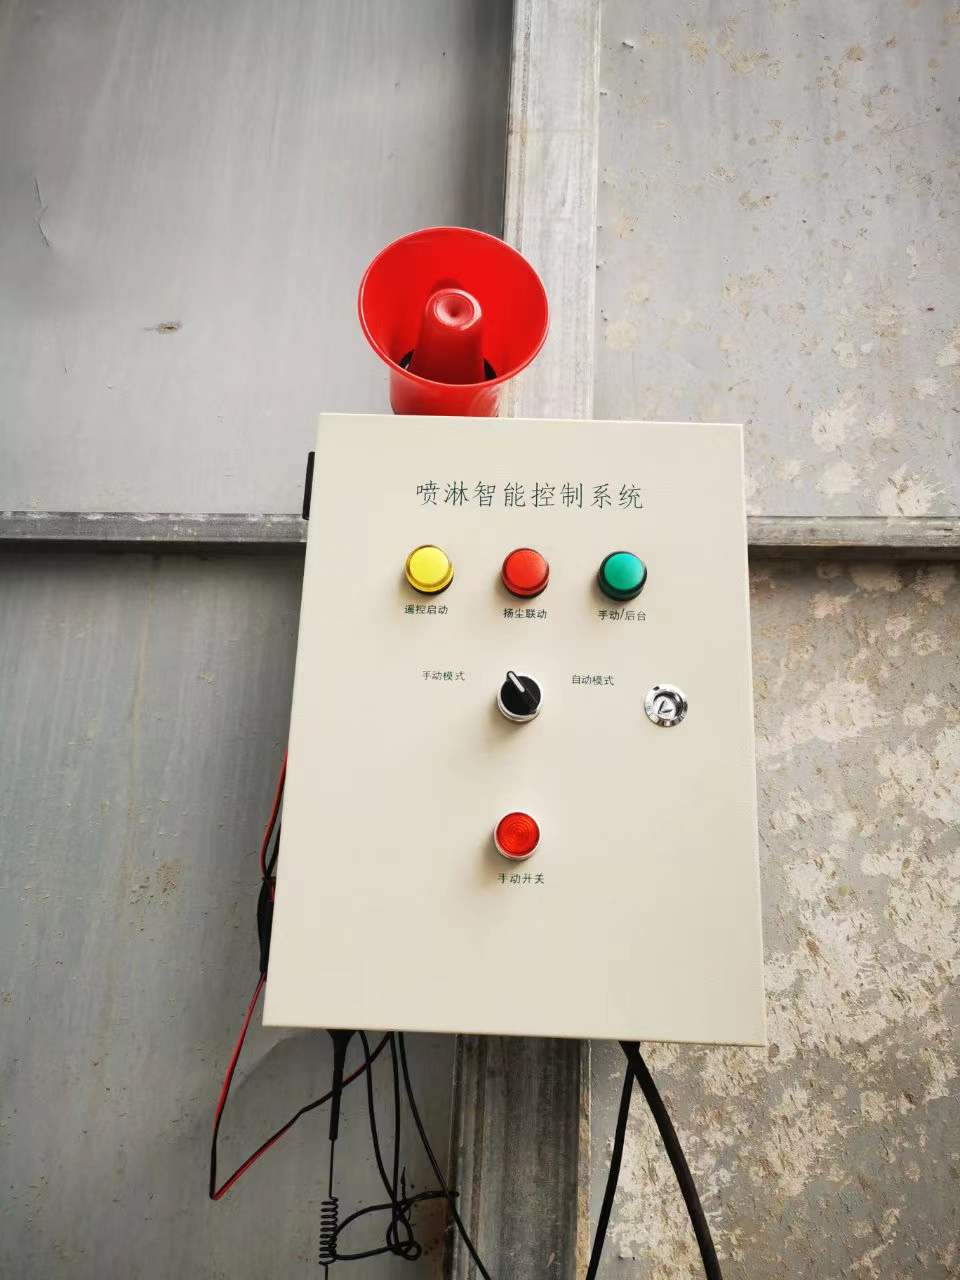 铜陵远程联动控制系统生产厂家 塔吊喷淋 安徽赛芙智能科技有限公司